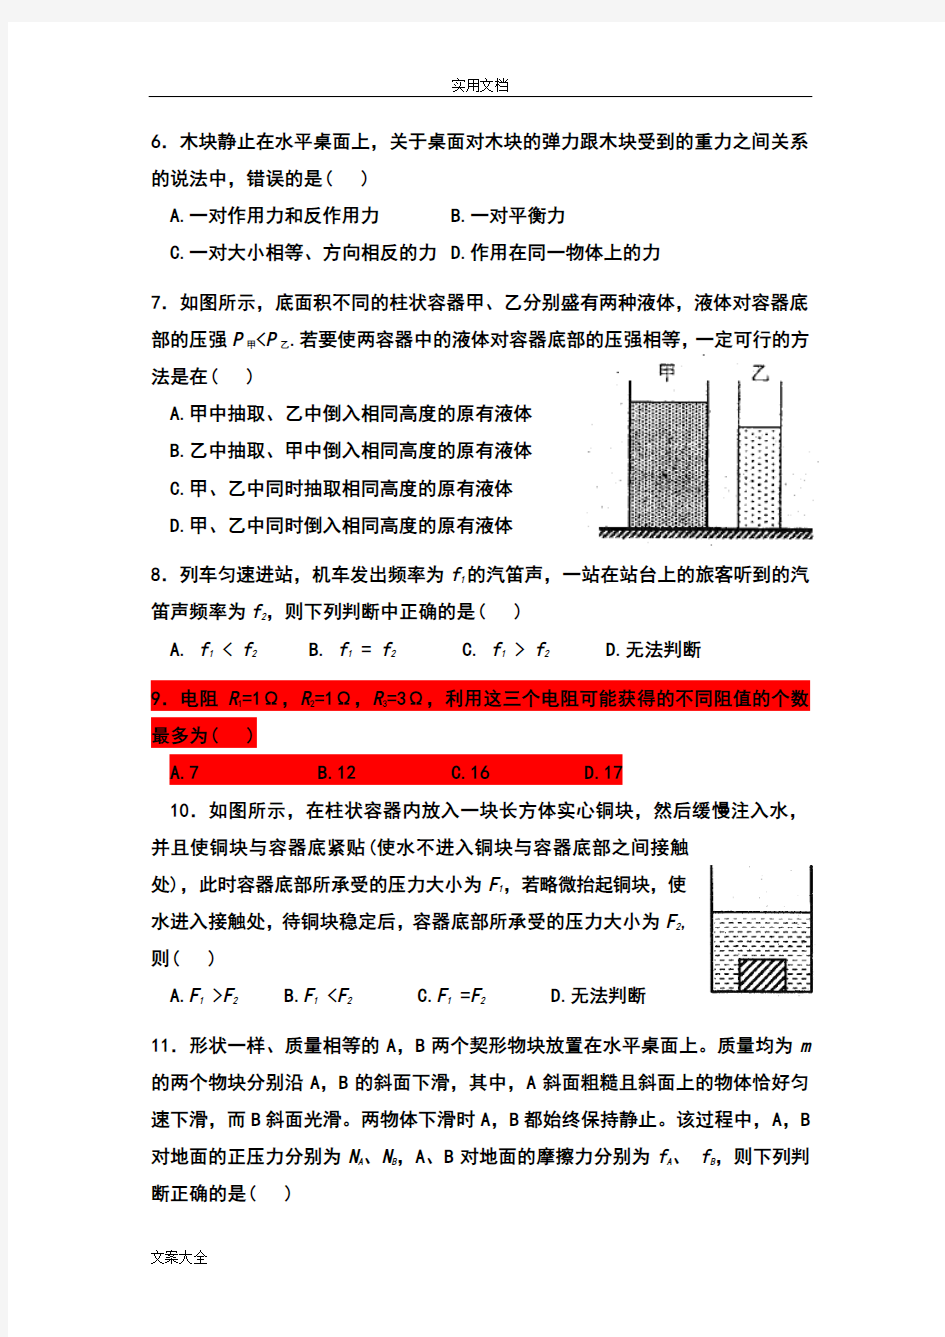 2017年上海市第31届大同杯物理竞赛初赛试卷及参考问题详解(改)